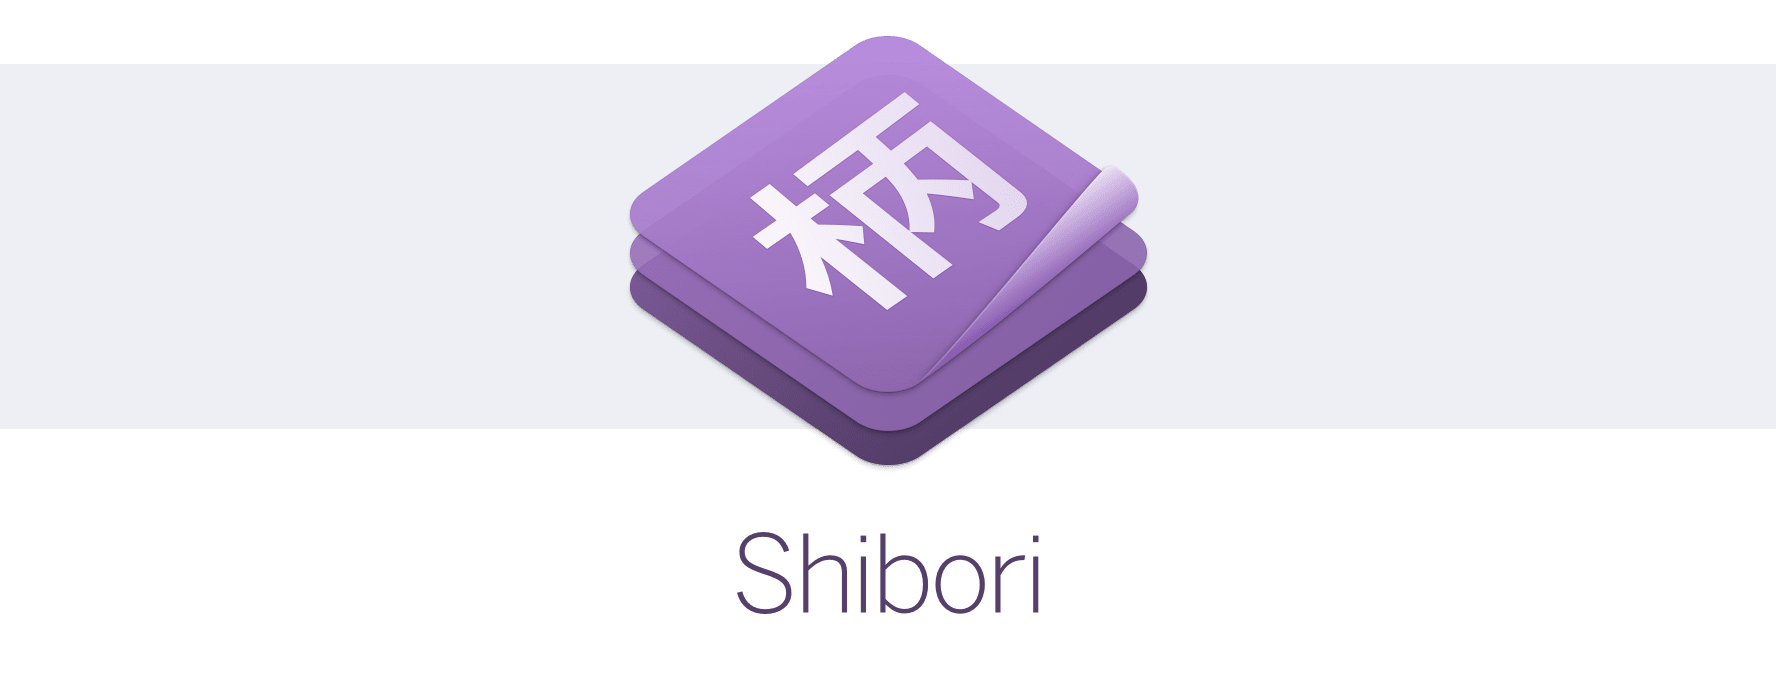 shibori-hero